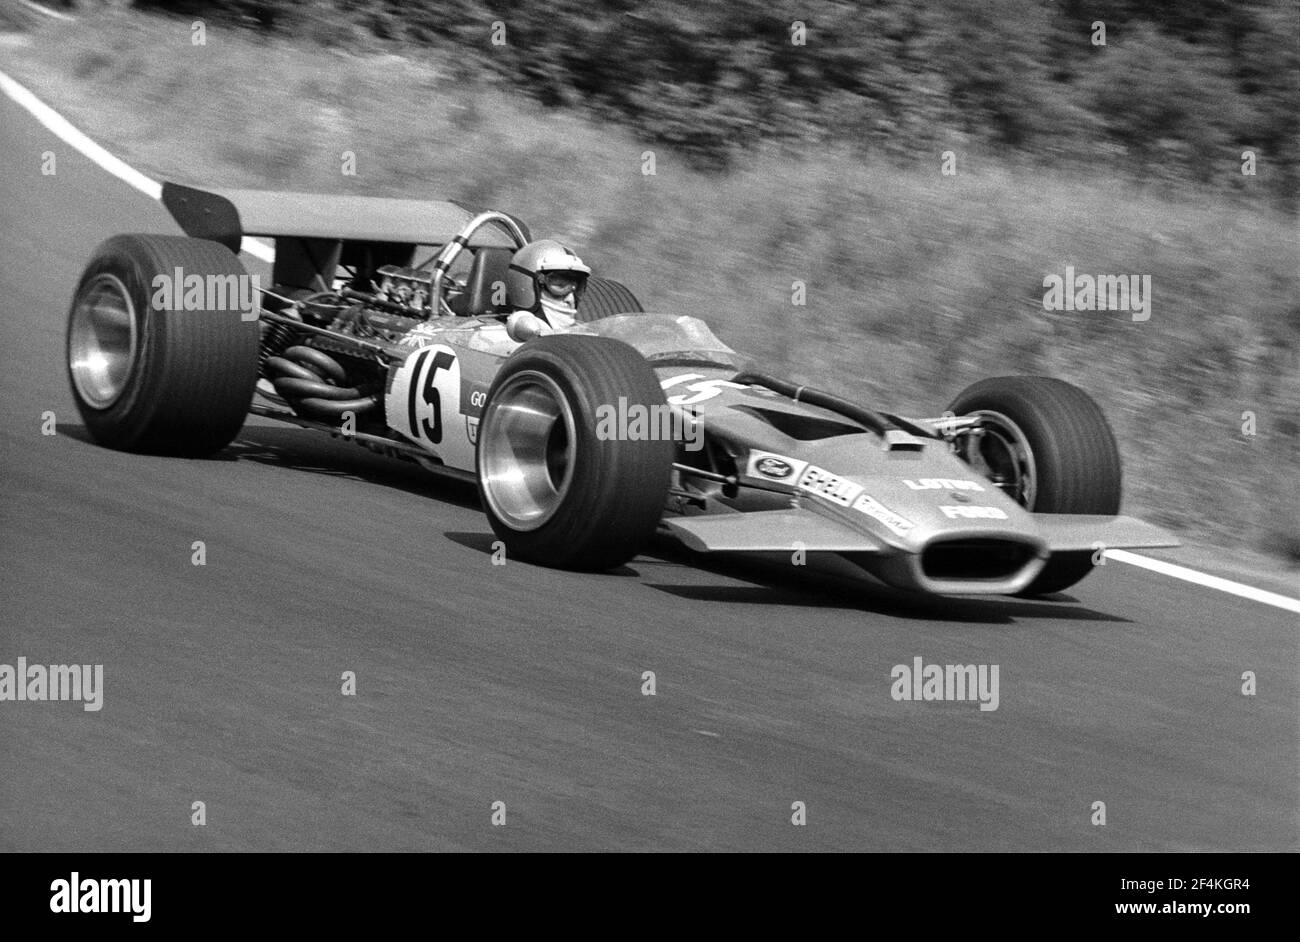 Jochen RINDT guida Lotus-Ford F1 a piena velocità durante il Gran Premio di Francia 1969, sul circuito di Charade vicino a Clermont-Ferrand. Foto Stock